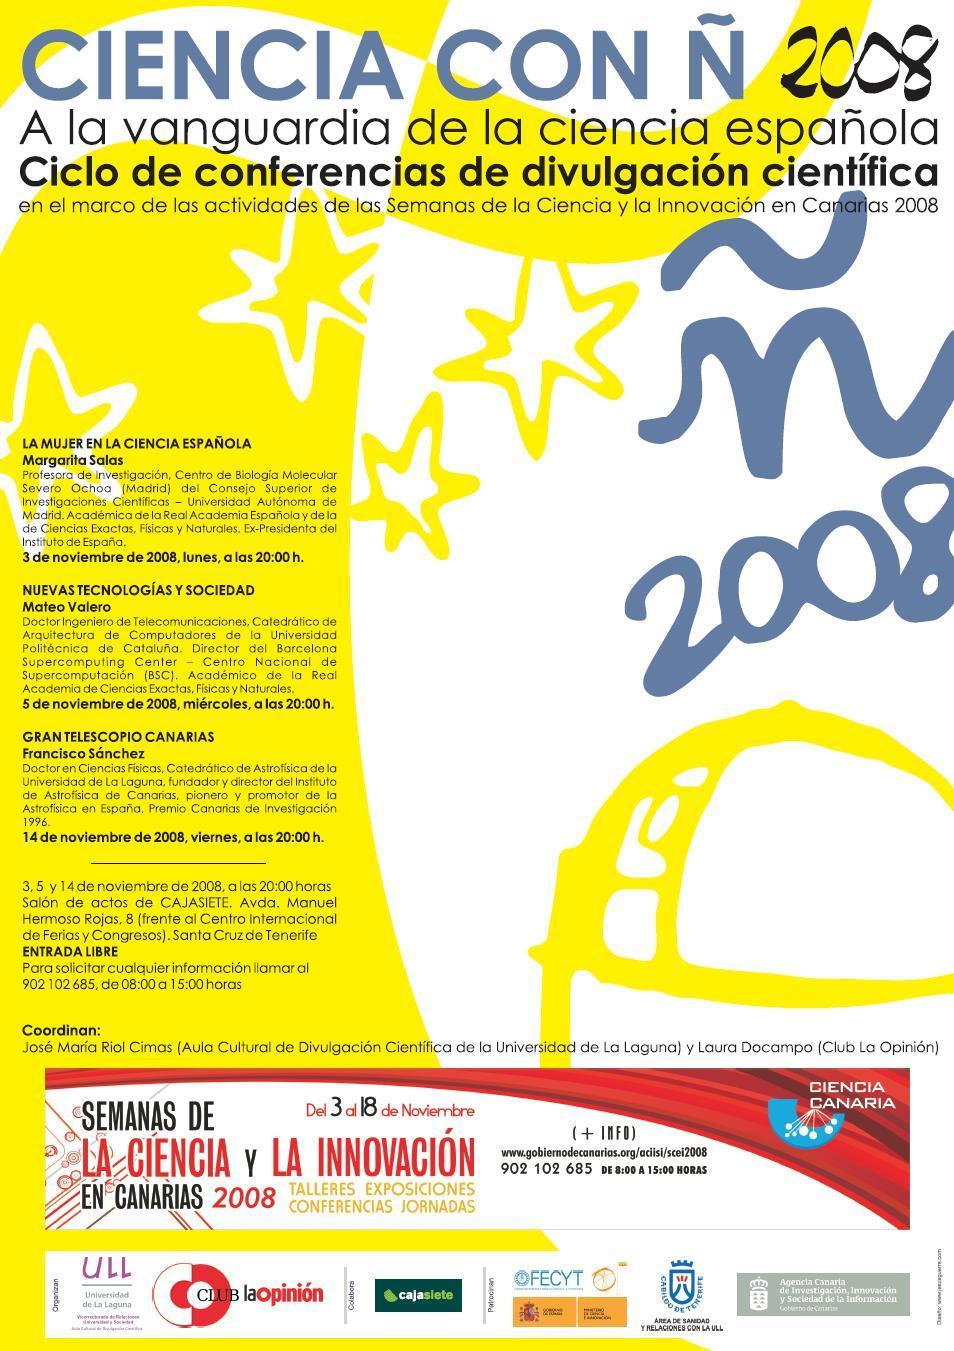 Diseño: Jesús Guerra Martín 2008 Organización del ACDC CIENCIA CON Ñ 2008.